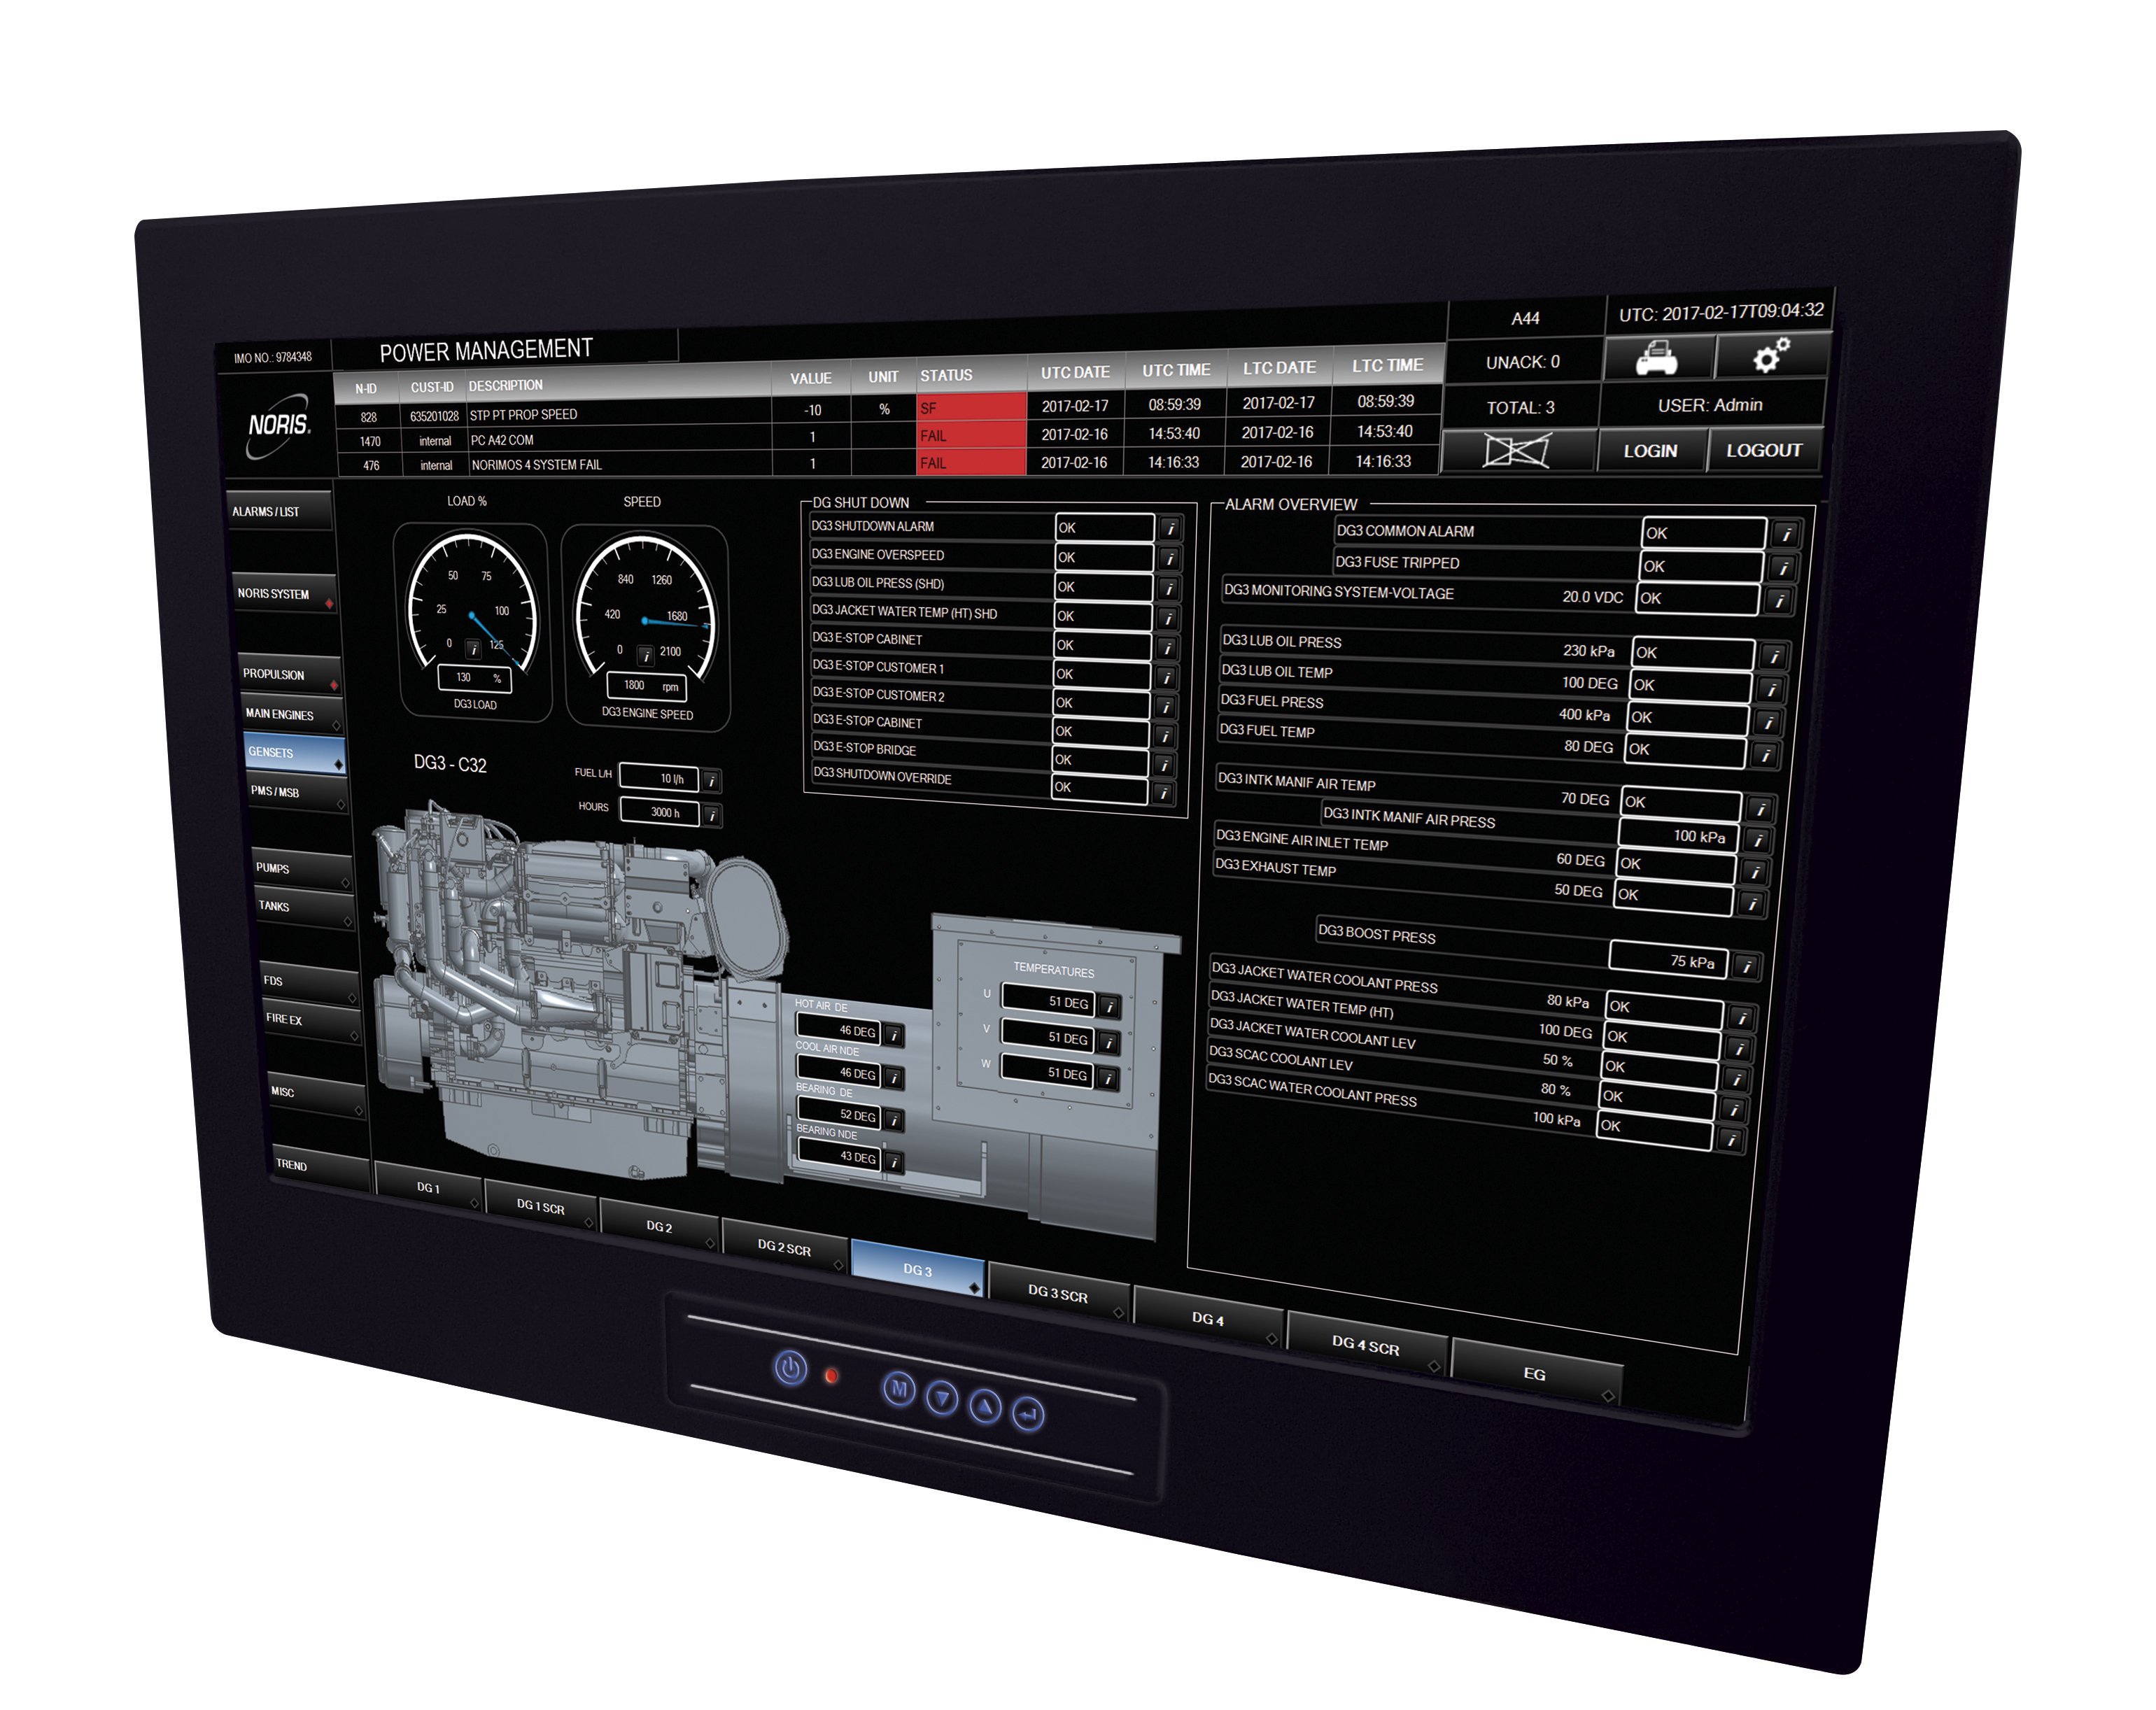 Das Bild zeigt ein großes 32" Touchscreen Display mit Power Management Software für Generatoren